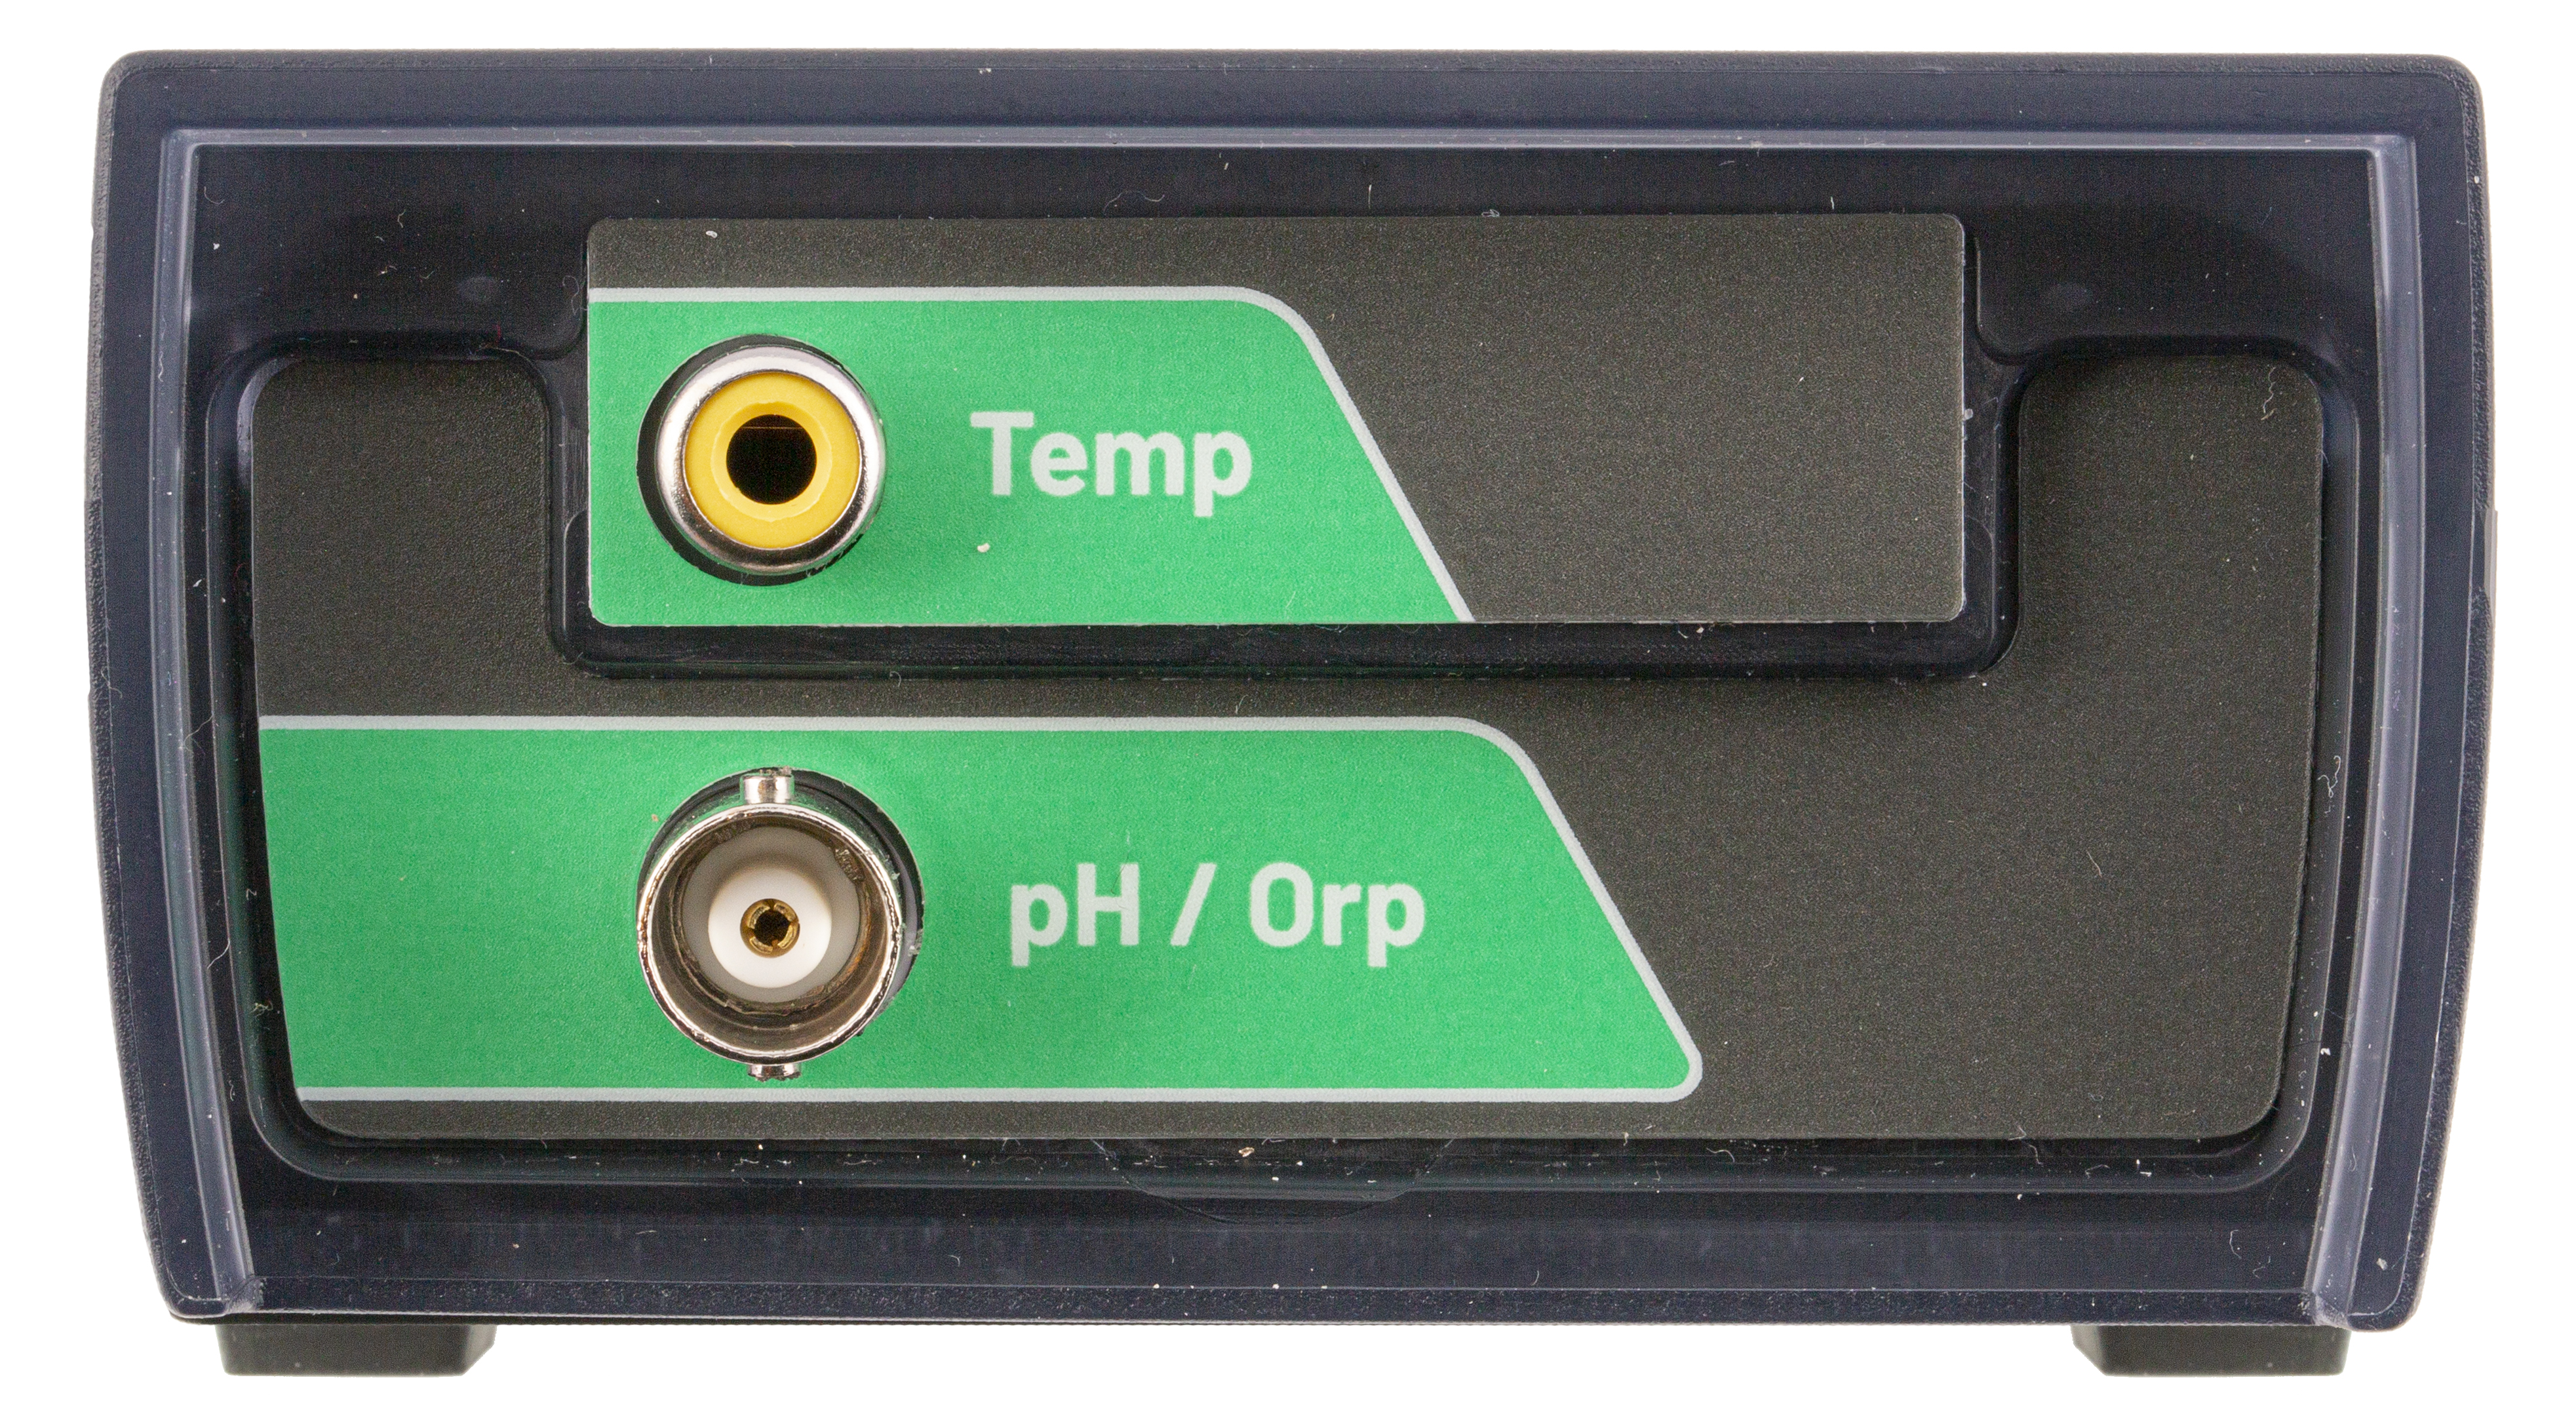 XS pH 70 Vio tragbares pH-Messgerät mit 201T-Elektrode mit integriertem Temperaturfühler und GLP Datenlogger Funktionen